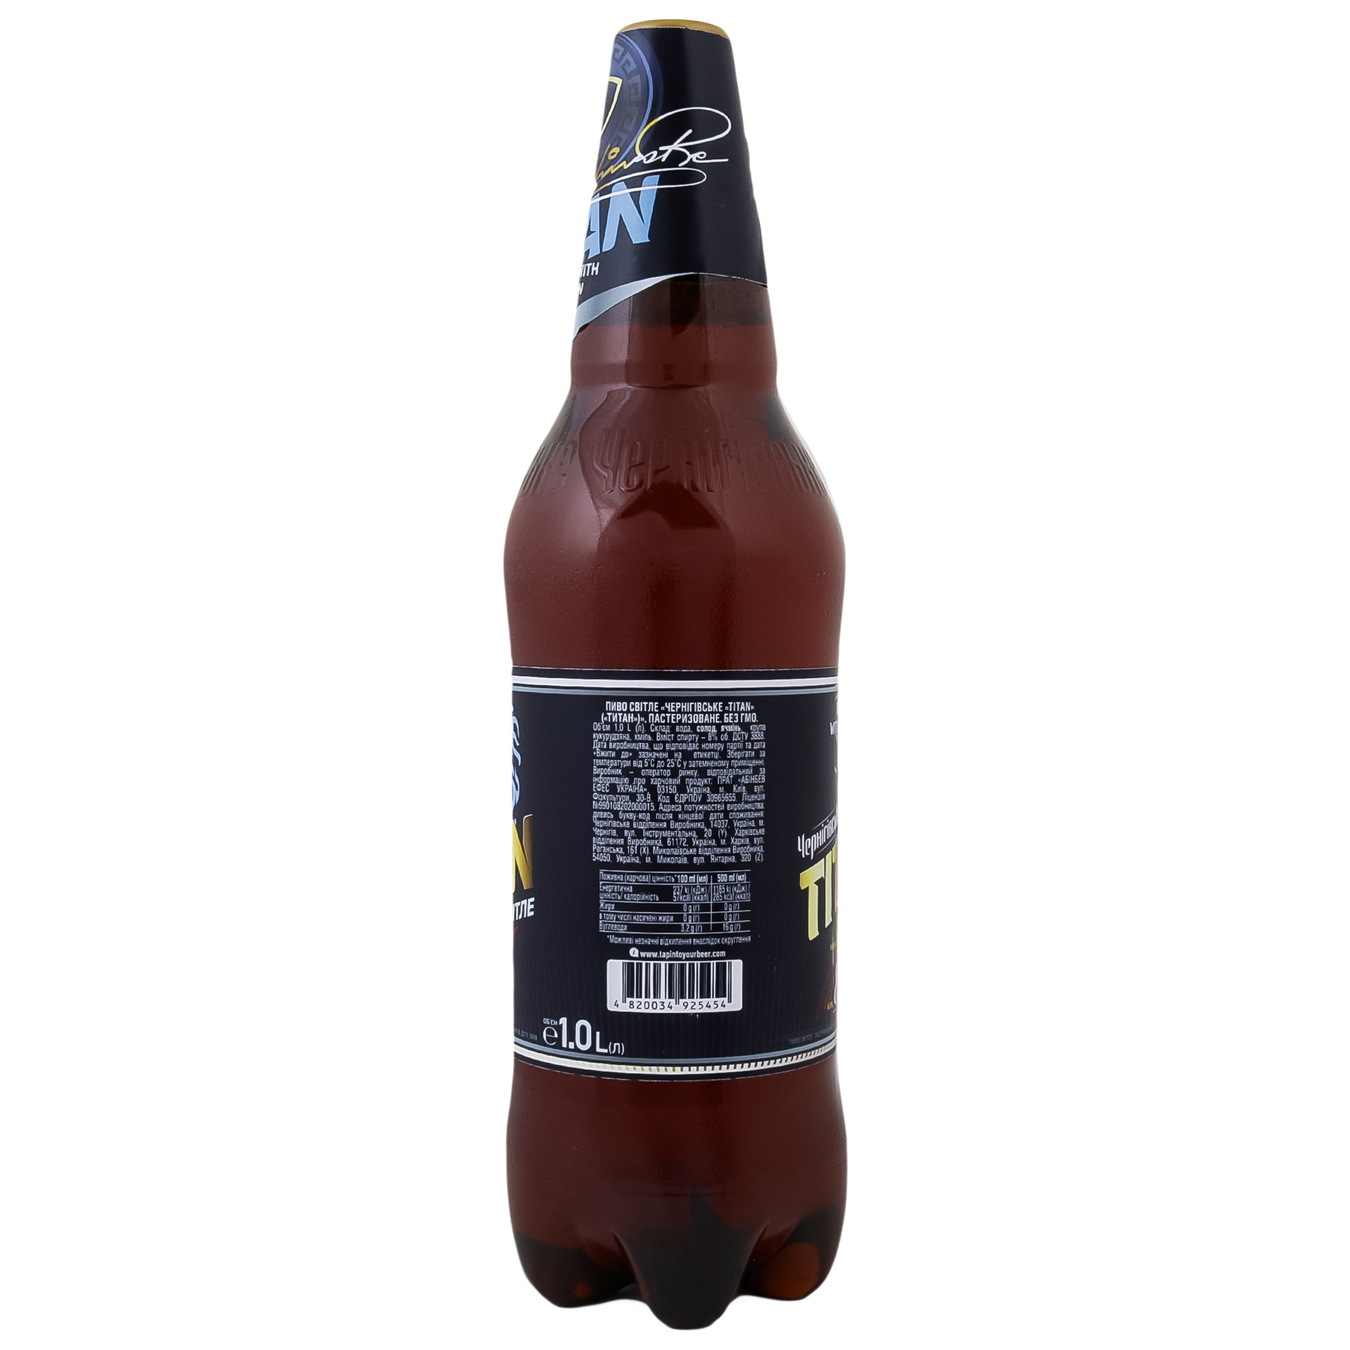 Chernihivske Titan light beer 8% 1l 3